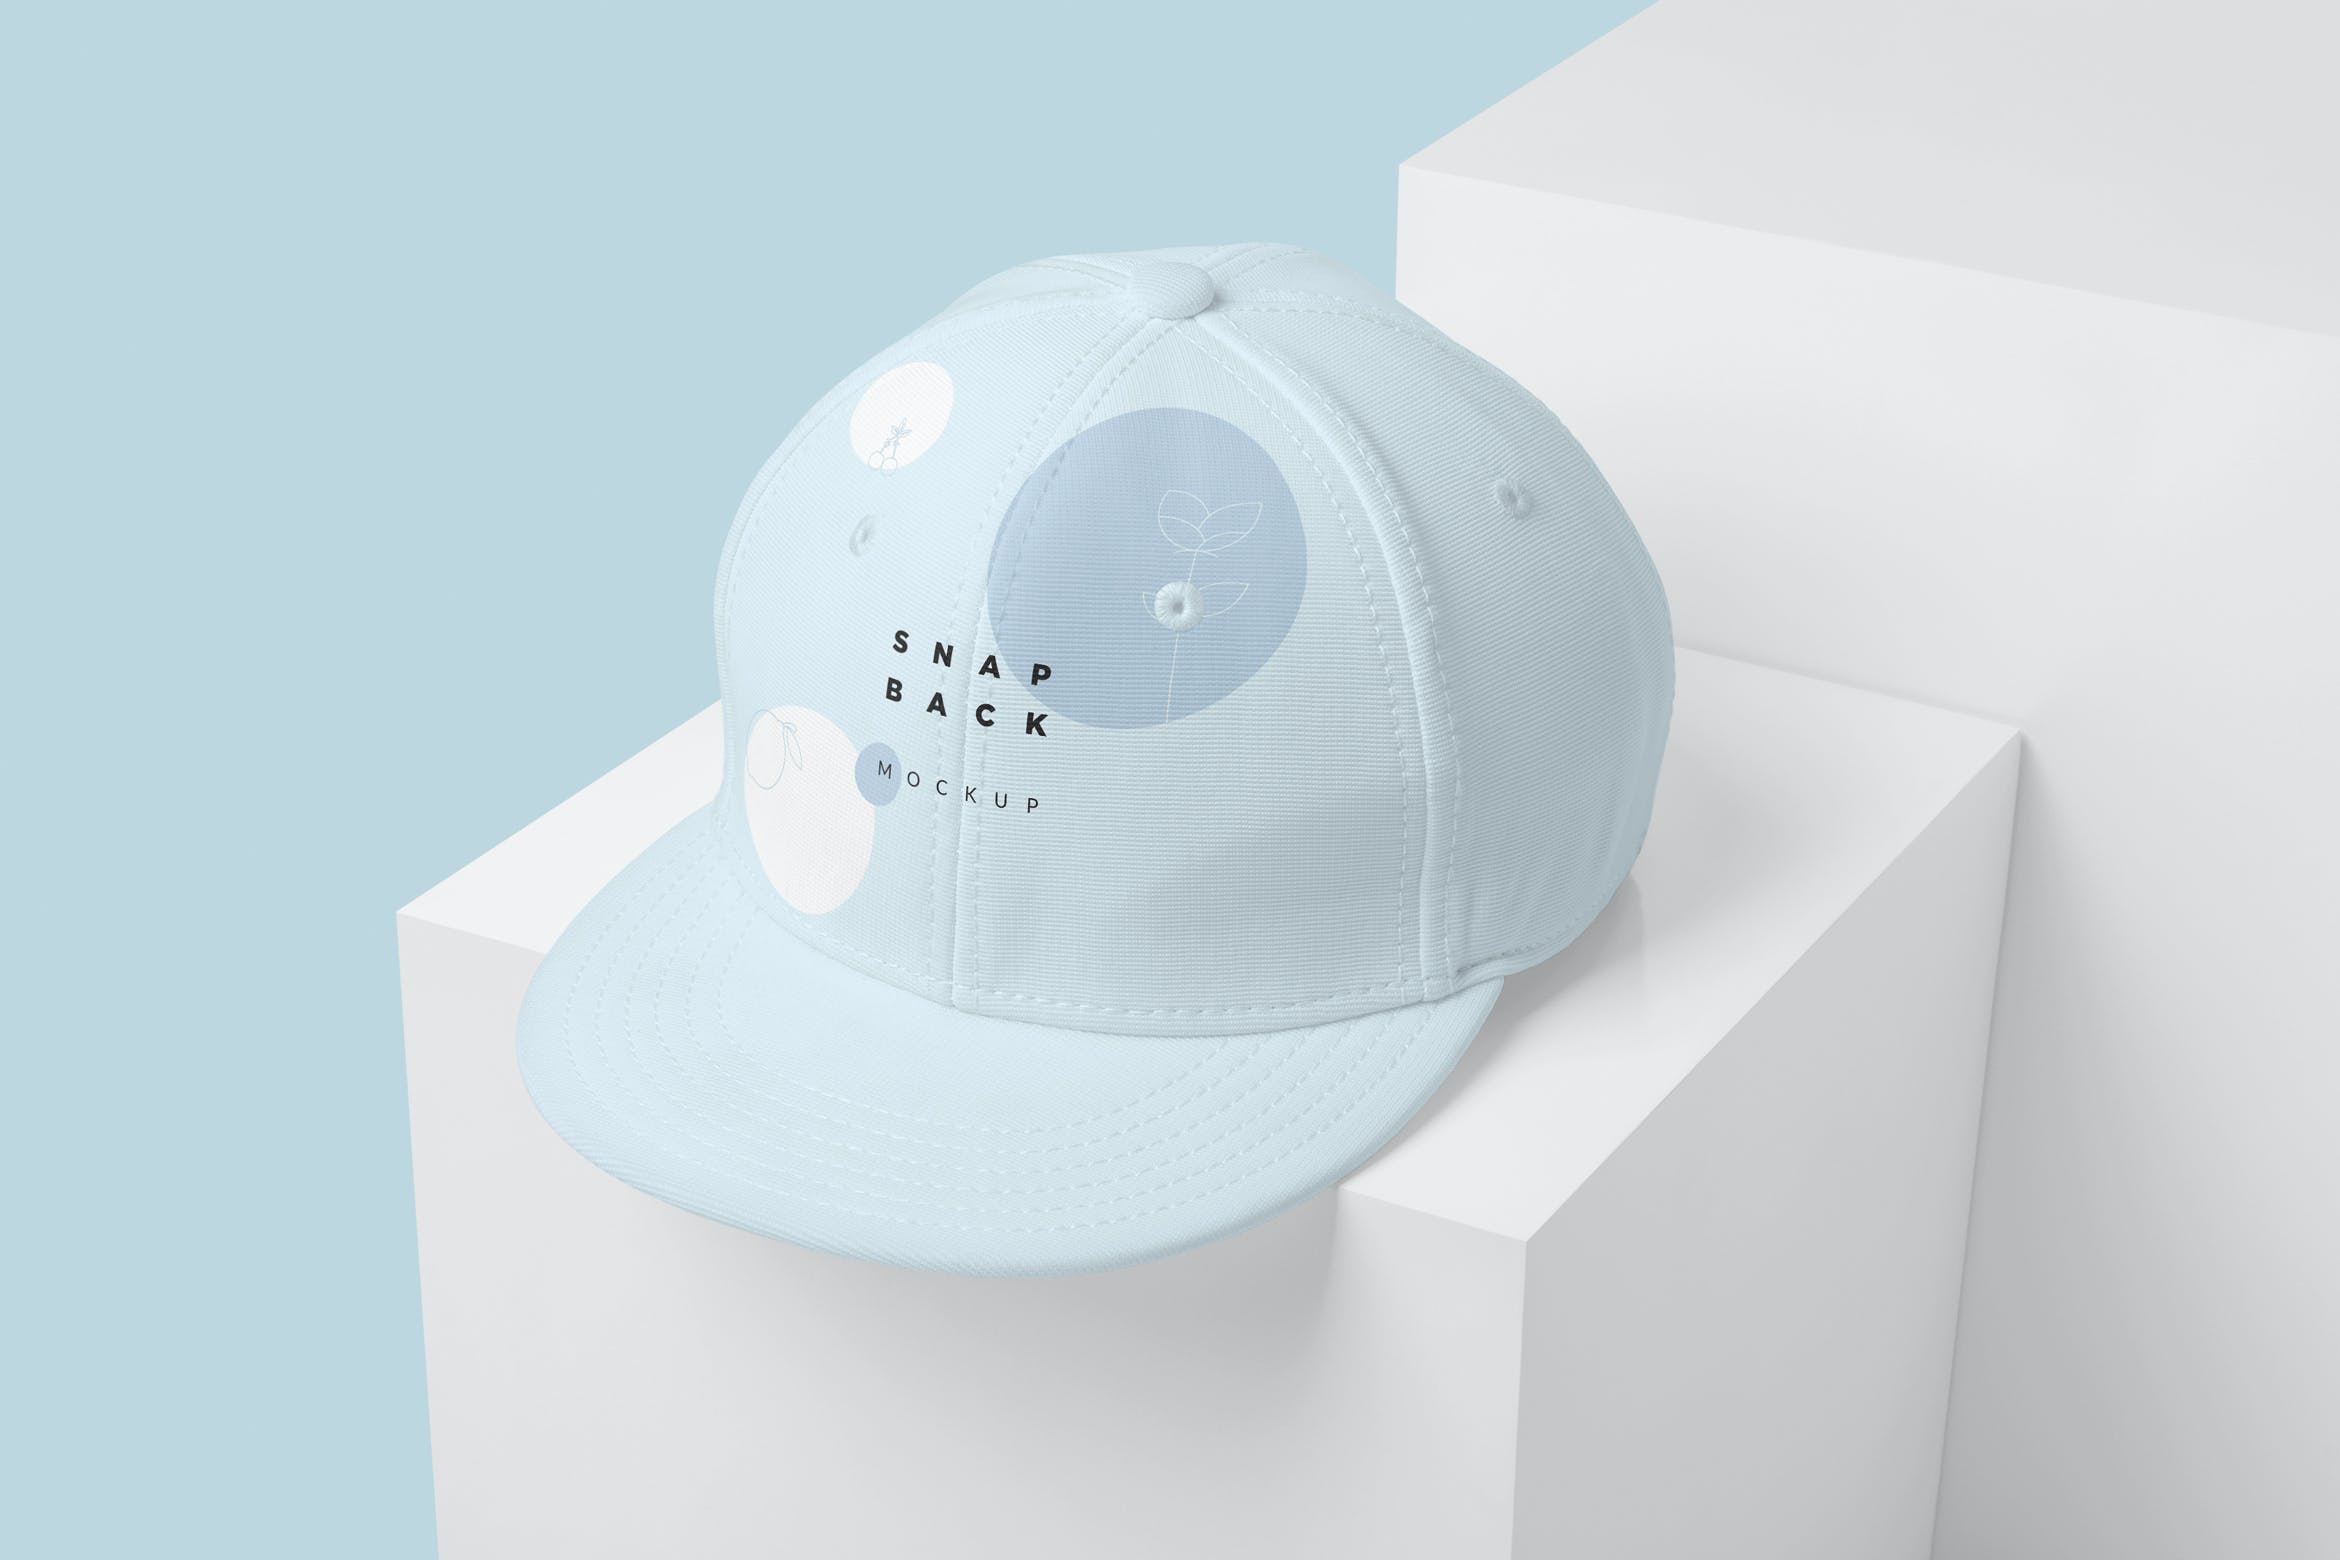 时尚的棒球帽设计图案效果图样机模板 Stylish Snapback Mockups设计素材模板